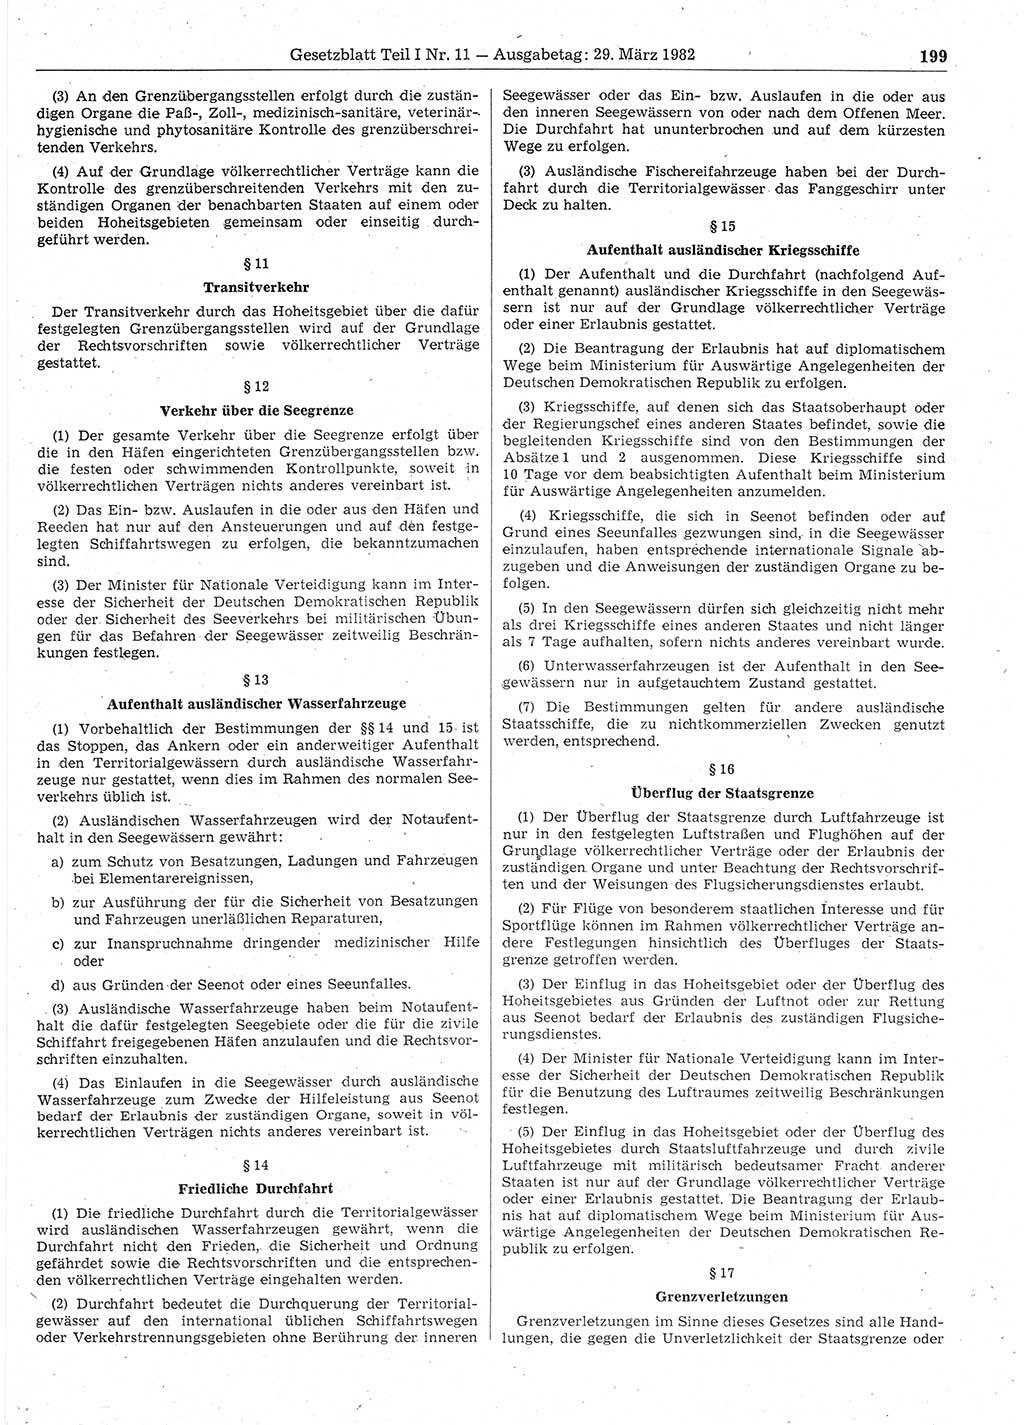 Gesetzblatt (GBl.) der Deutschen Demokratischen Republik (DDR) Teil Ⅰ 1982, Seite 199 (GBl. DDR Ⅰ 1982, S. 199)